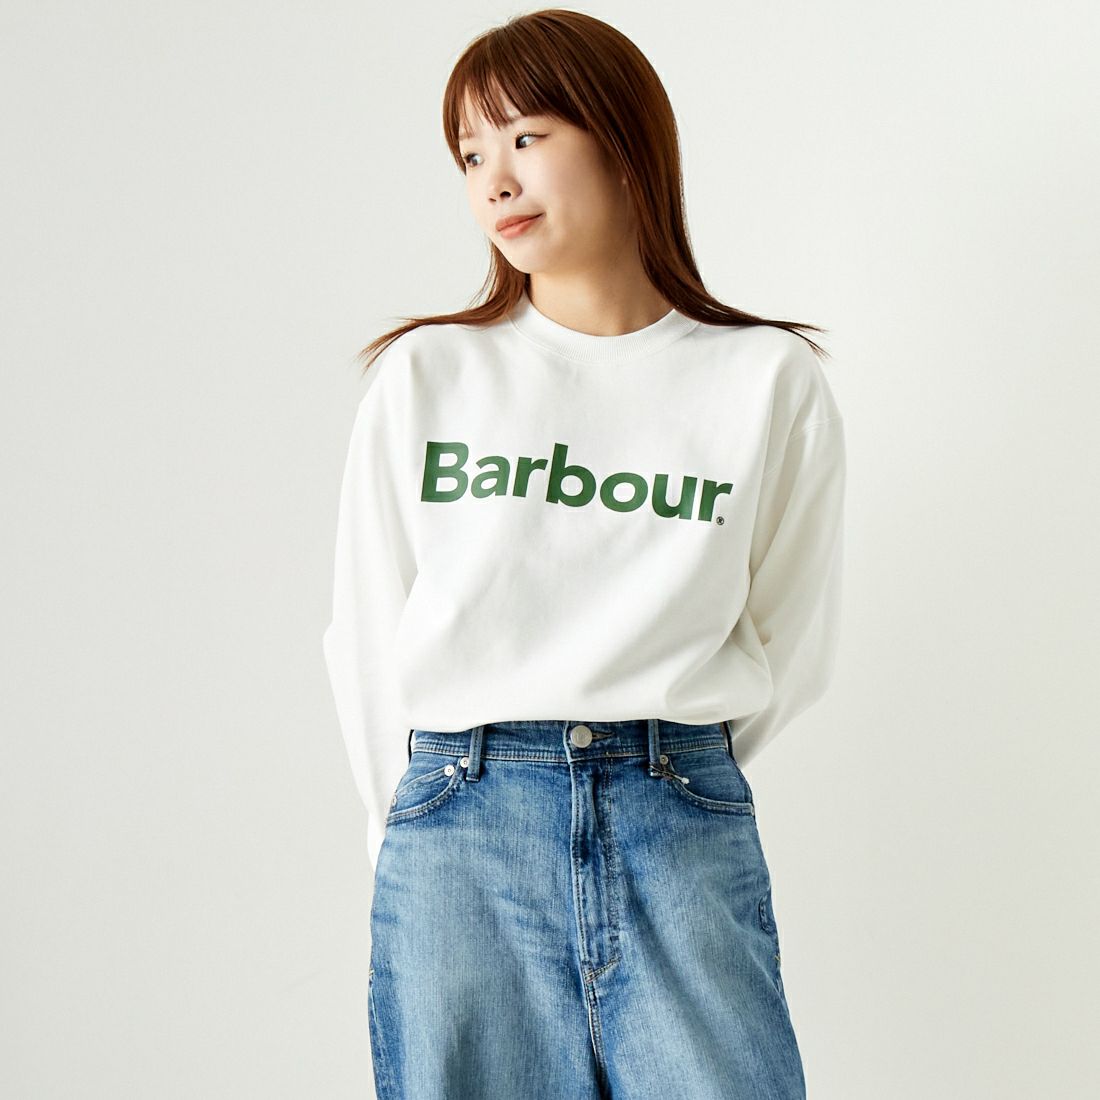 Barbour [バブアー] BARBOURロゴ クルーネックスウェット [241LOLG001]